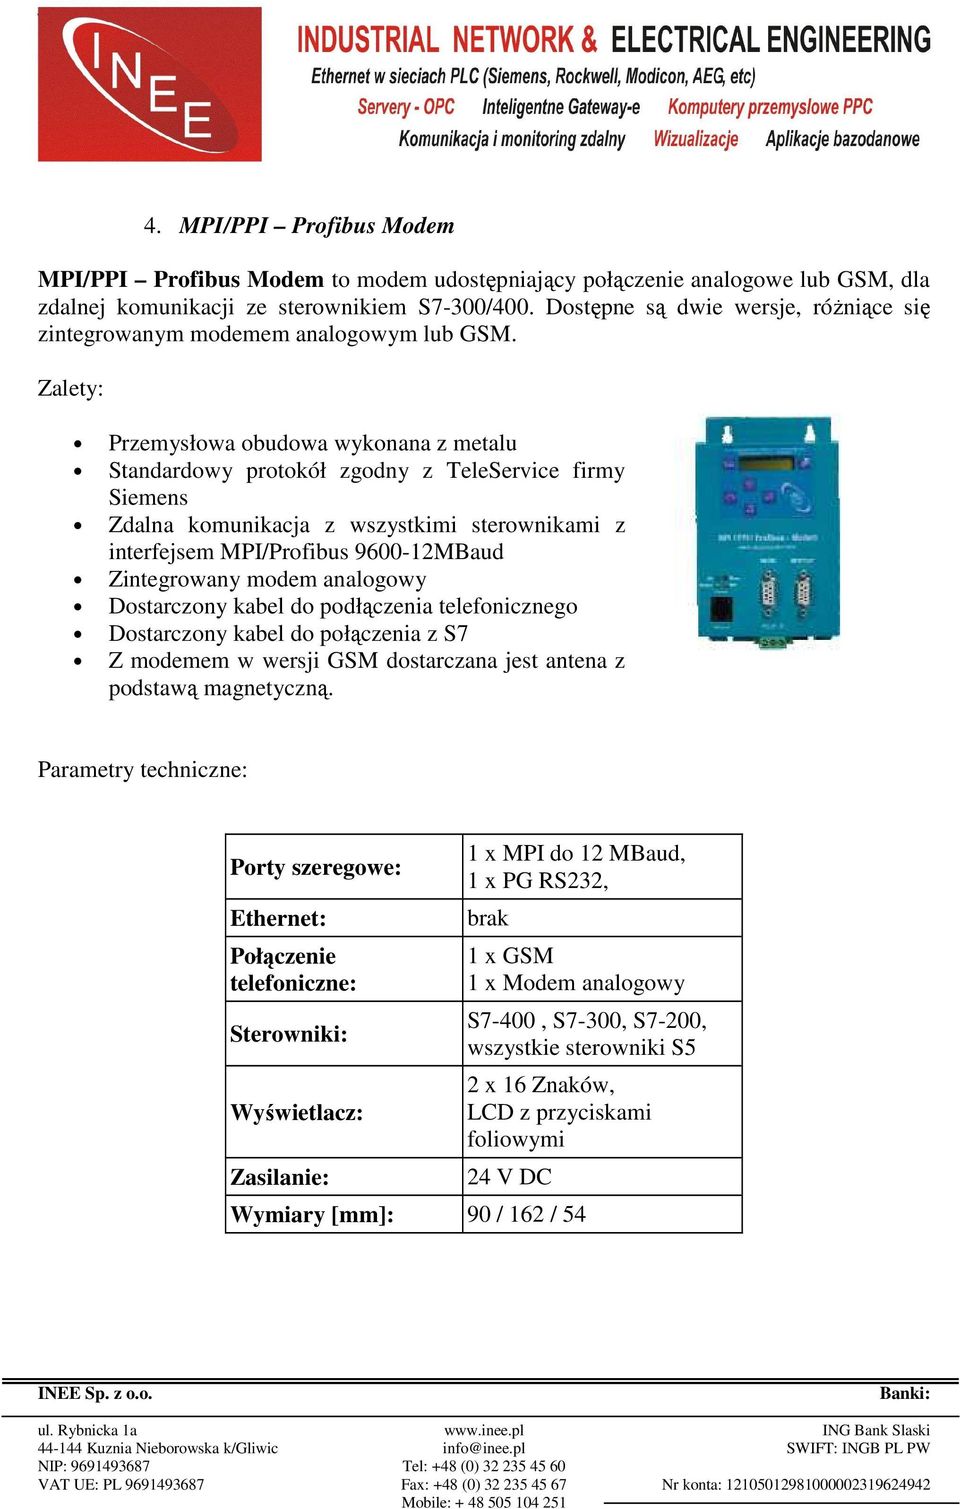 Zalety: Przemysłowa obudowa wykonana z metalu Standardowy protokół zgodny z TeleService firmy Siemens Zdalna komunikacja z wszystkimi sterownikami z interfejsem MPI/Profibus 9600-12MBaud Zintegrowany